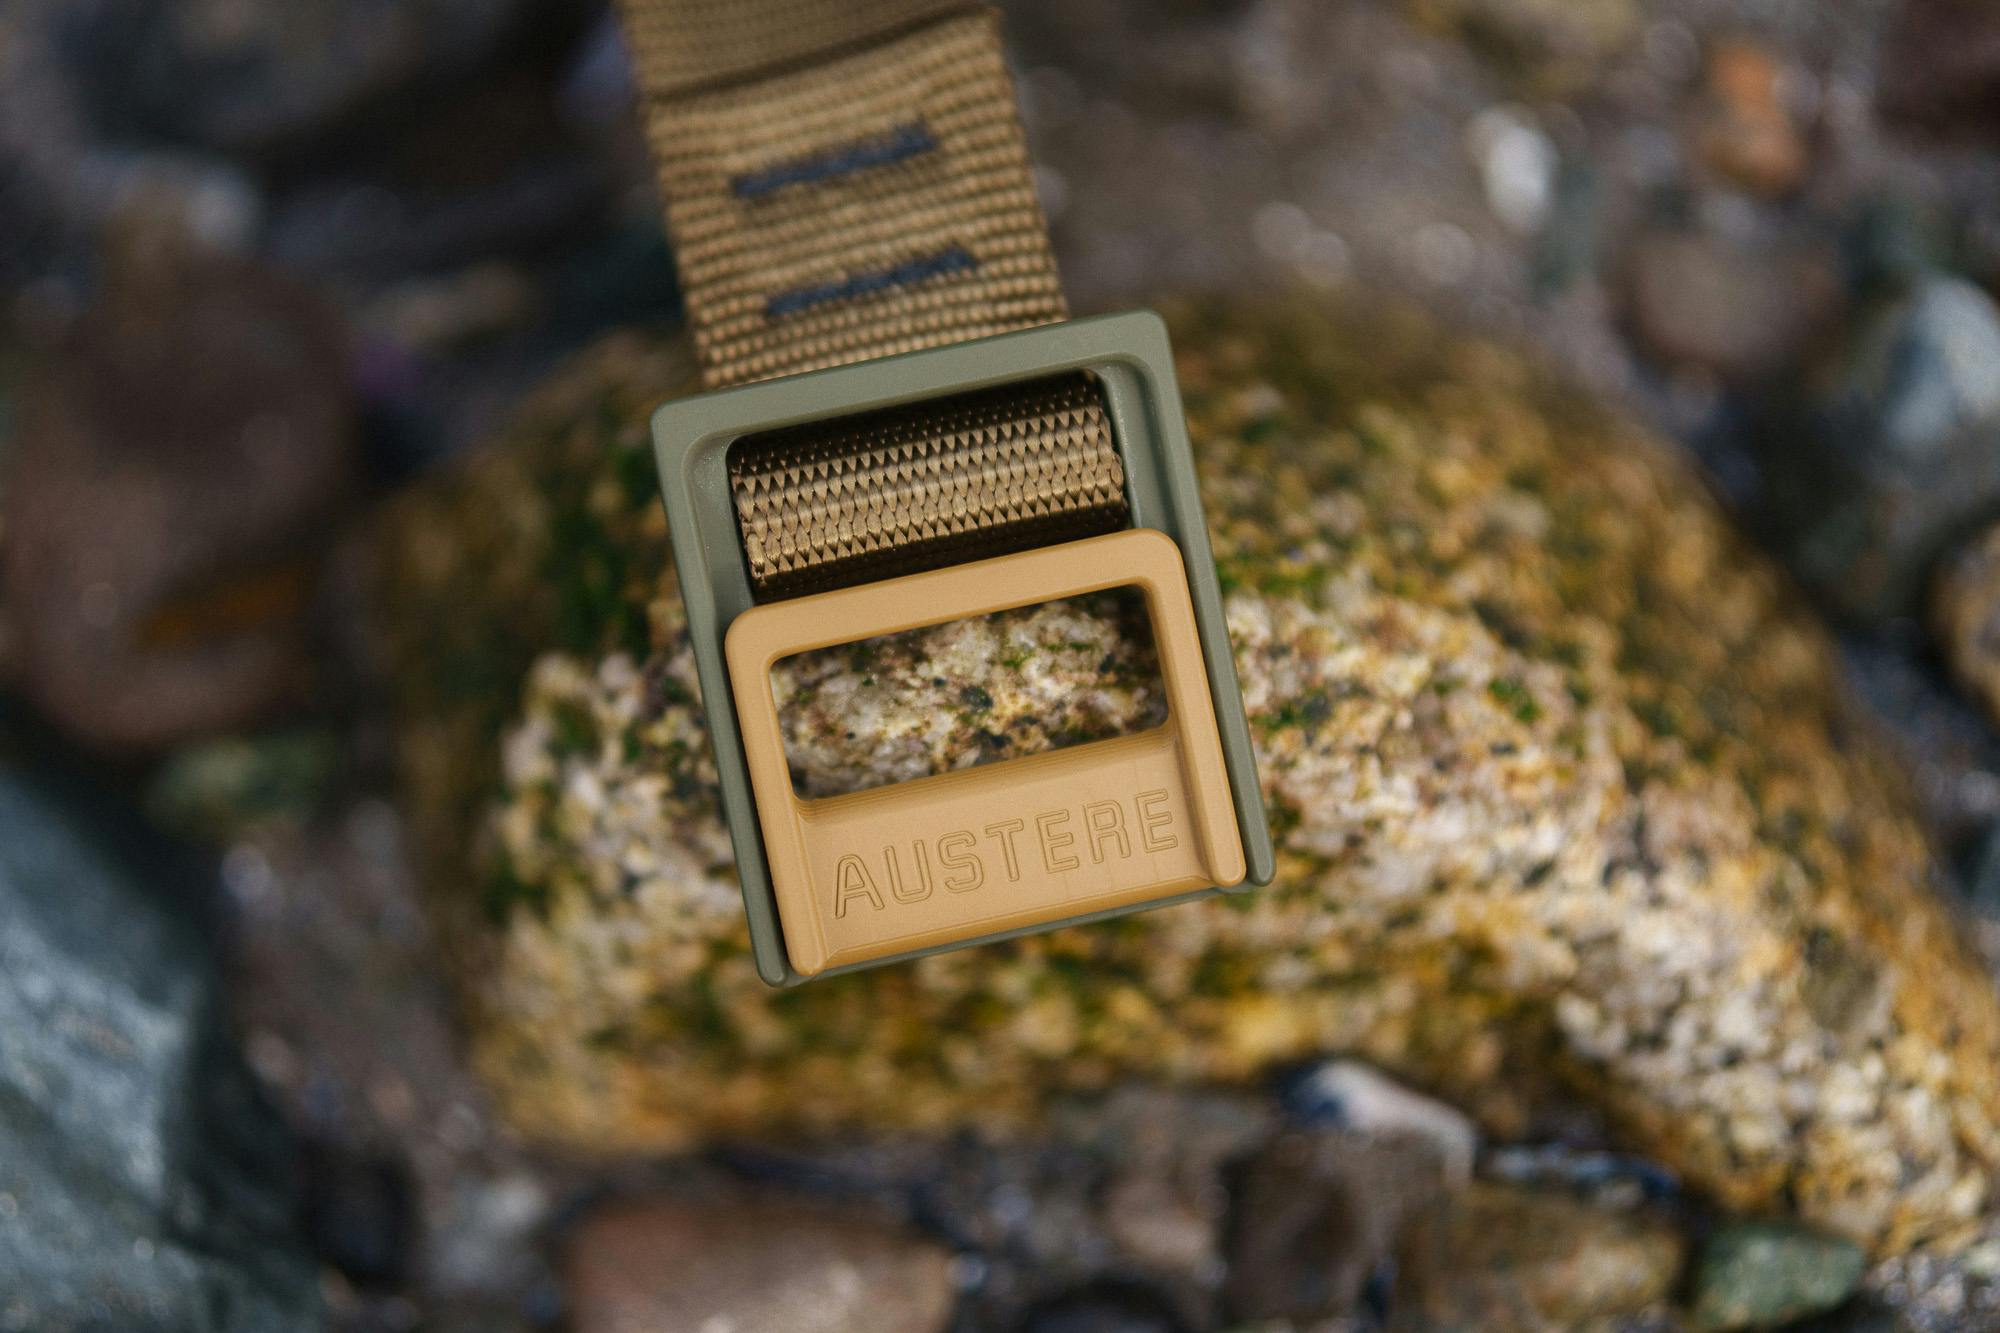 An Austere lock belt on a rock.